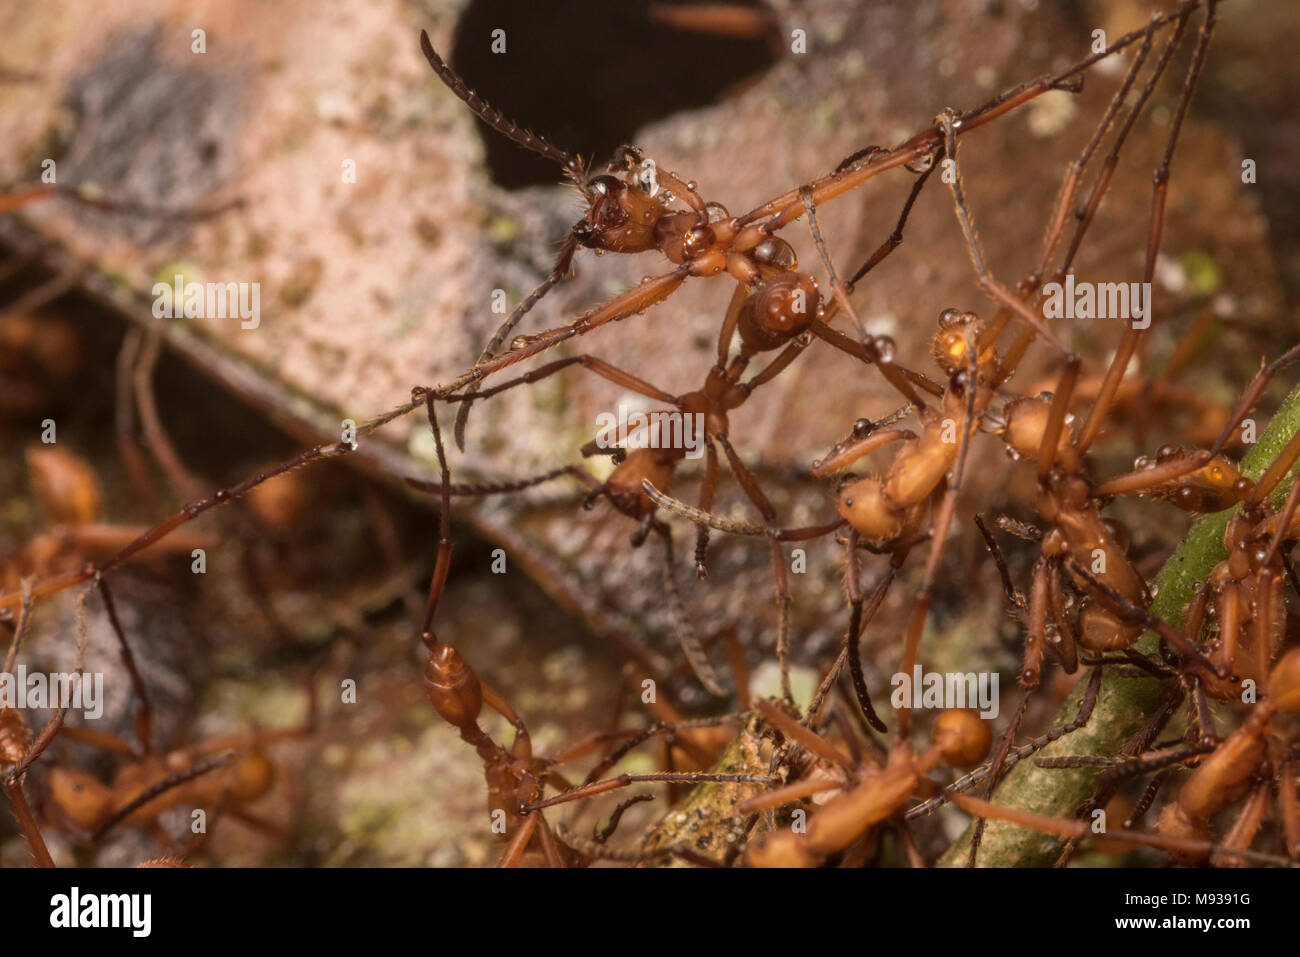 Esercito di formiche (Eciton hamatum) usare il proprio corpo per costruire un nido, qui un lavoratore ant è teso in direzioni opposte come egli forma un ponte vivente. Foto Stock